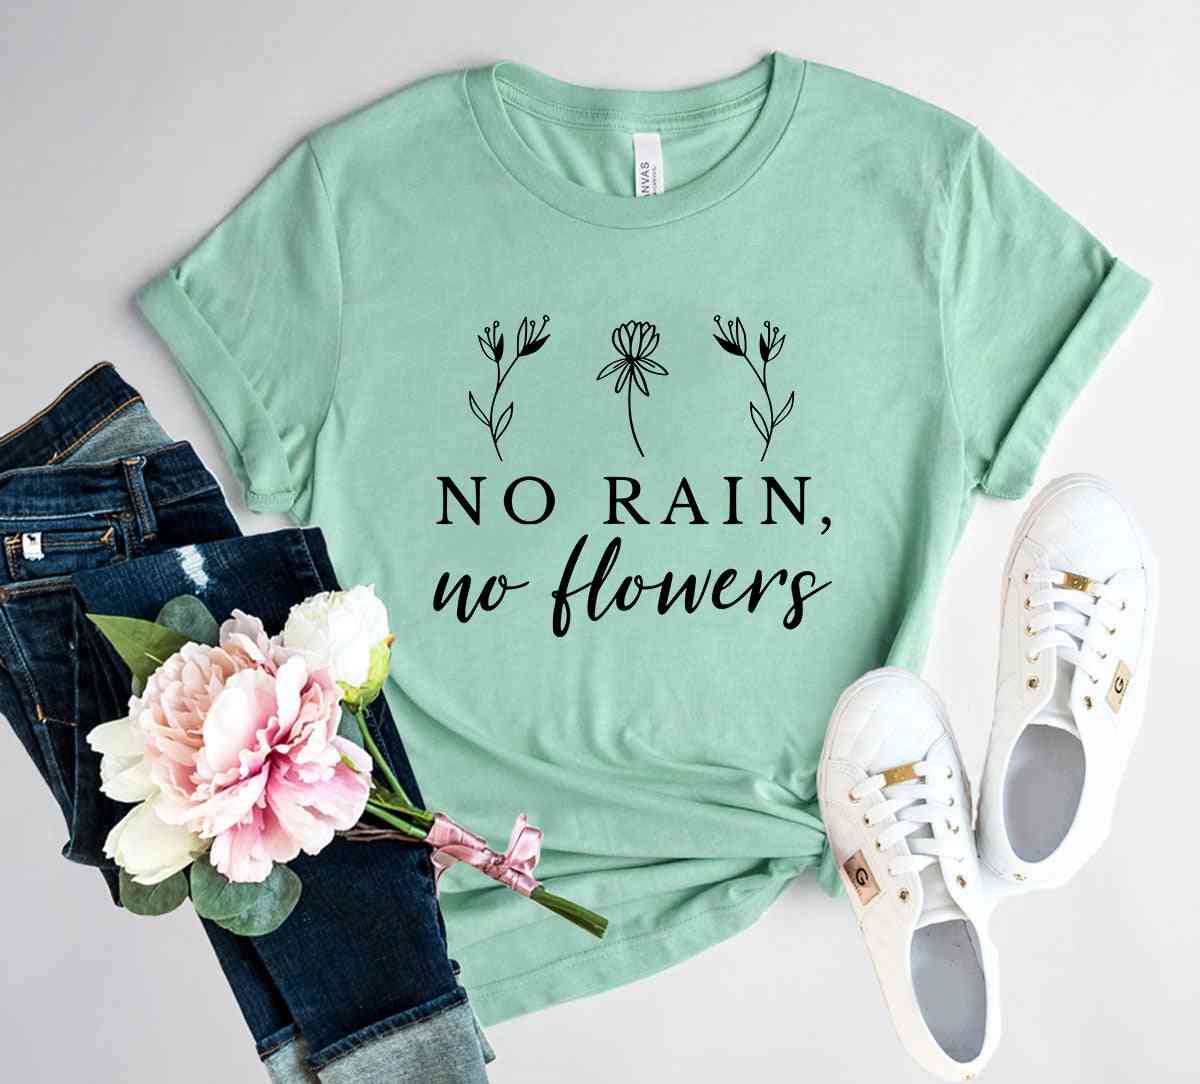 Chemise pas de pluie pas de fleurs